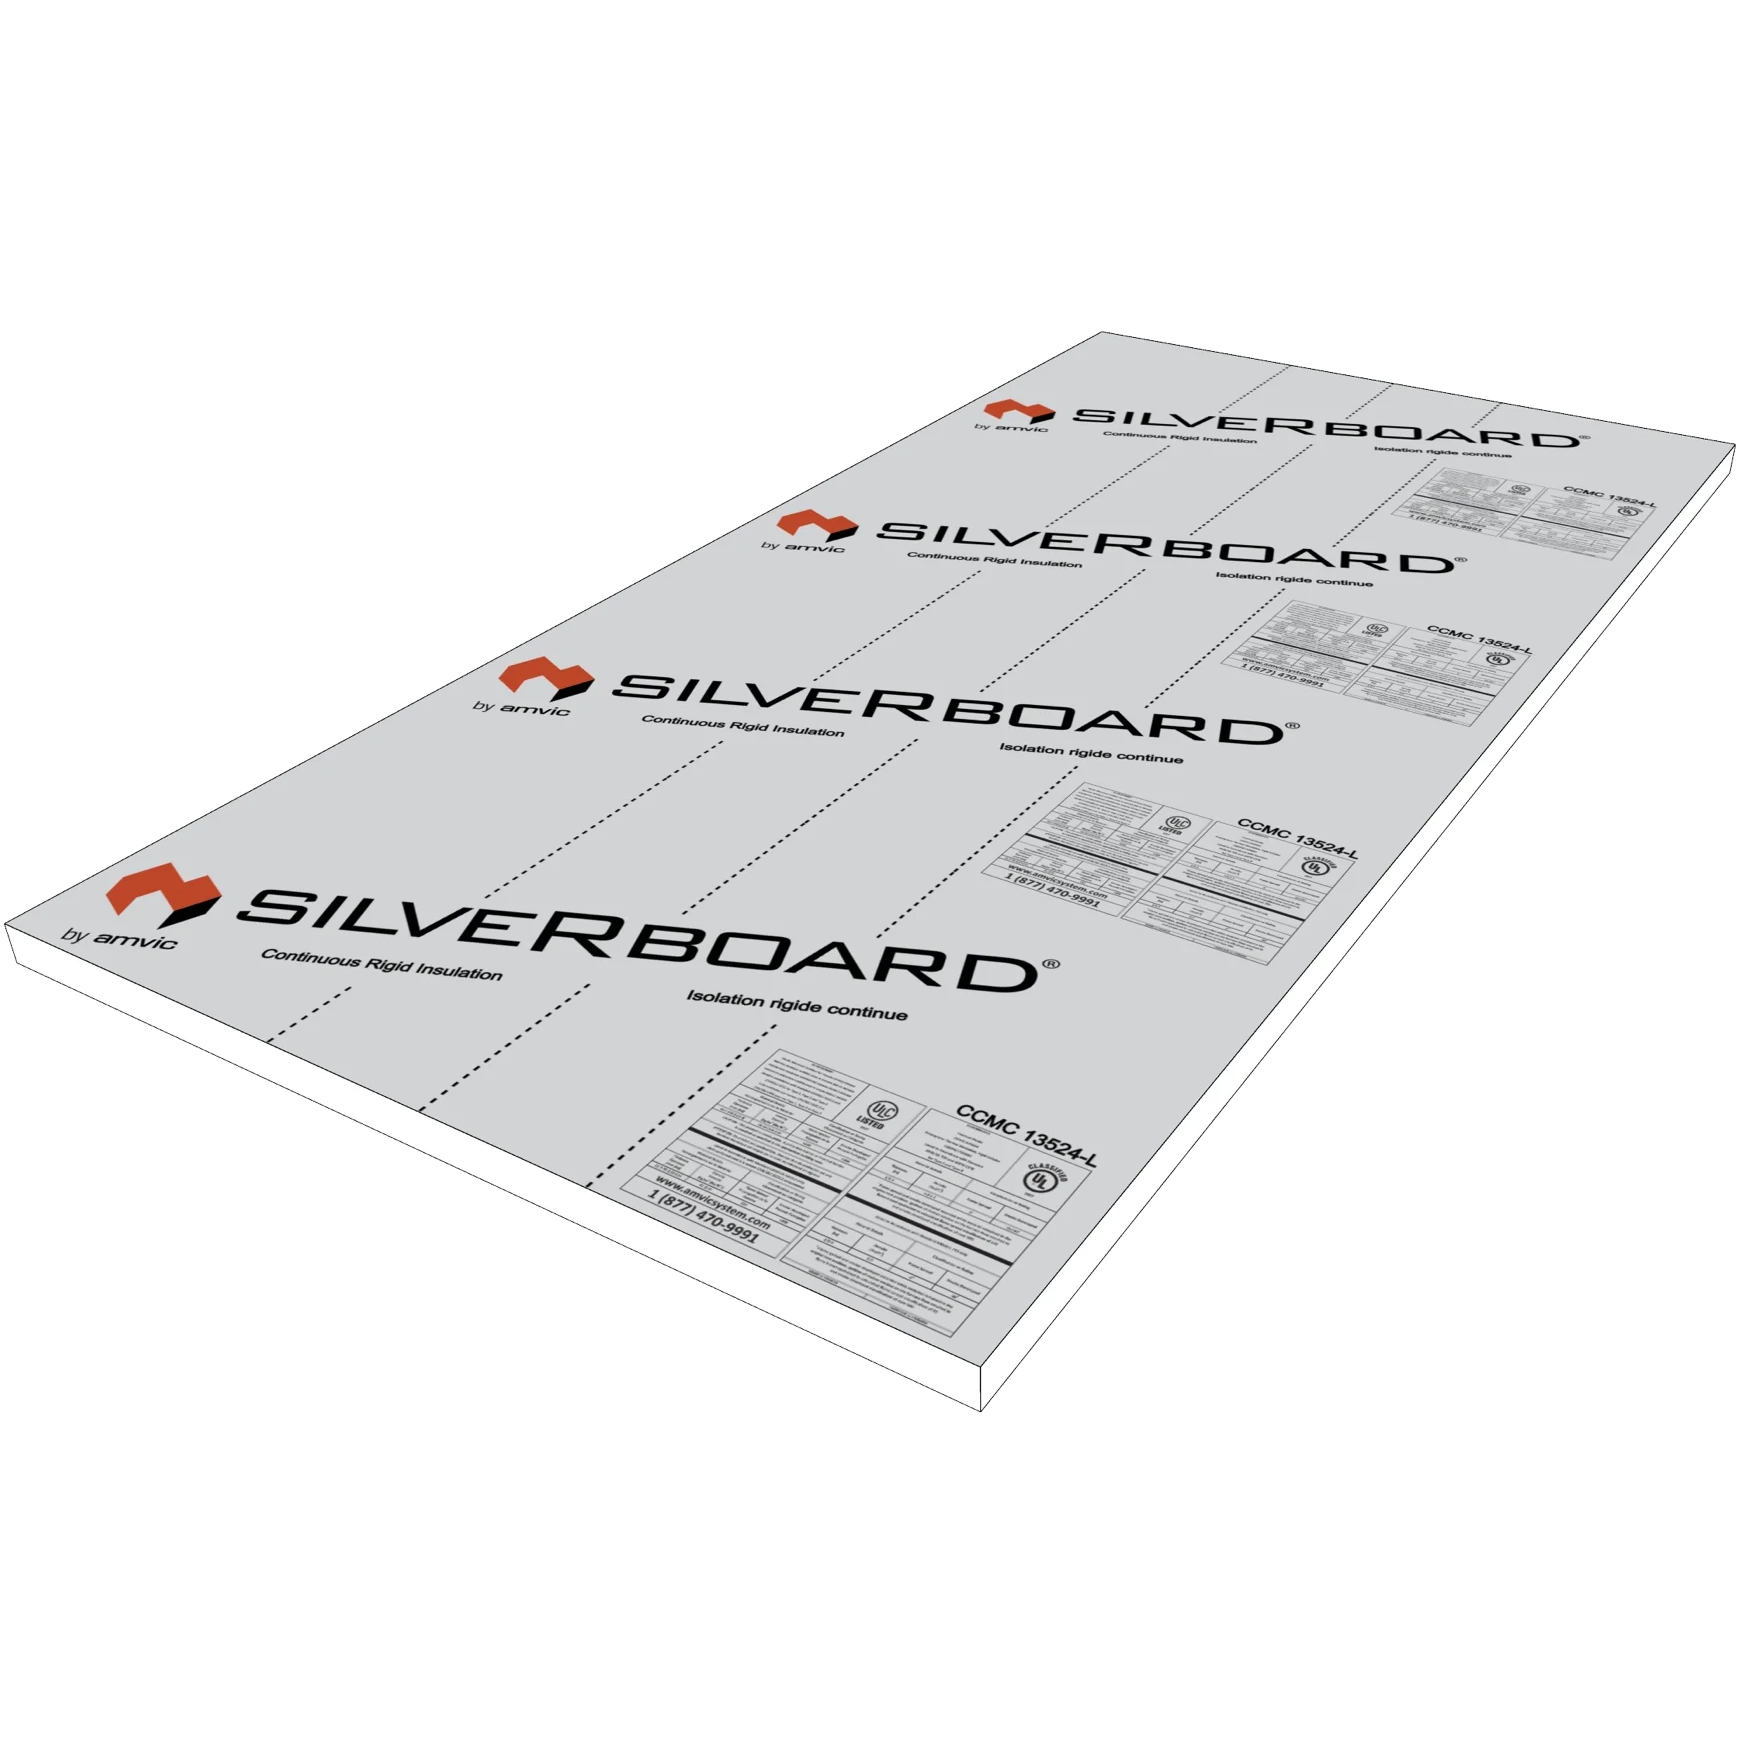 SILVERBOARD 2" x 4' x 8' R10 SB-35 Foam Insulation